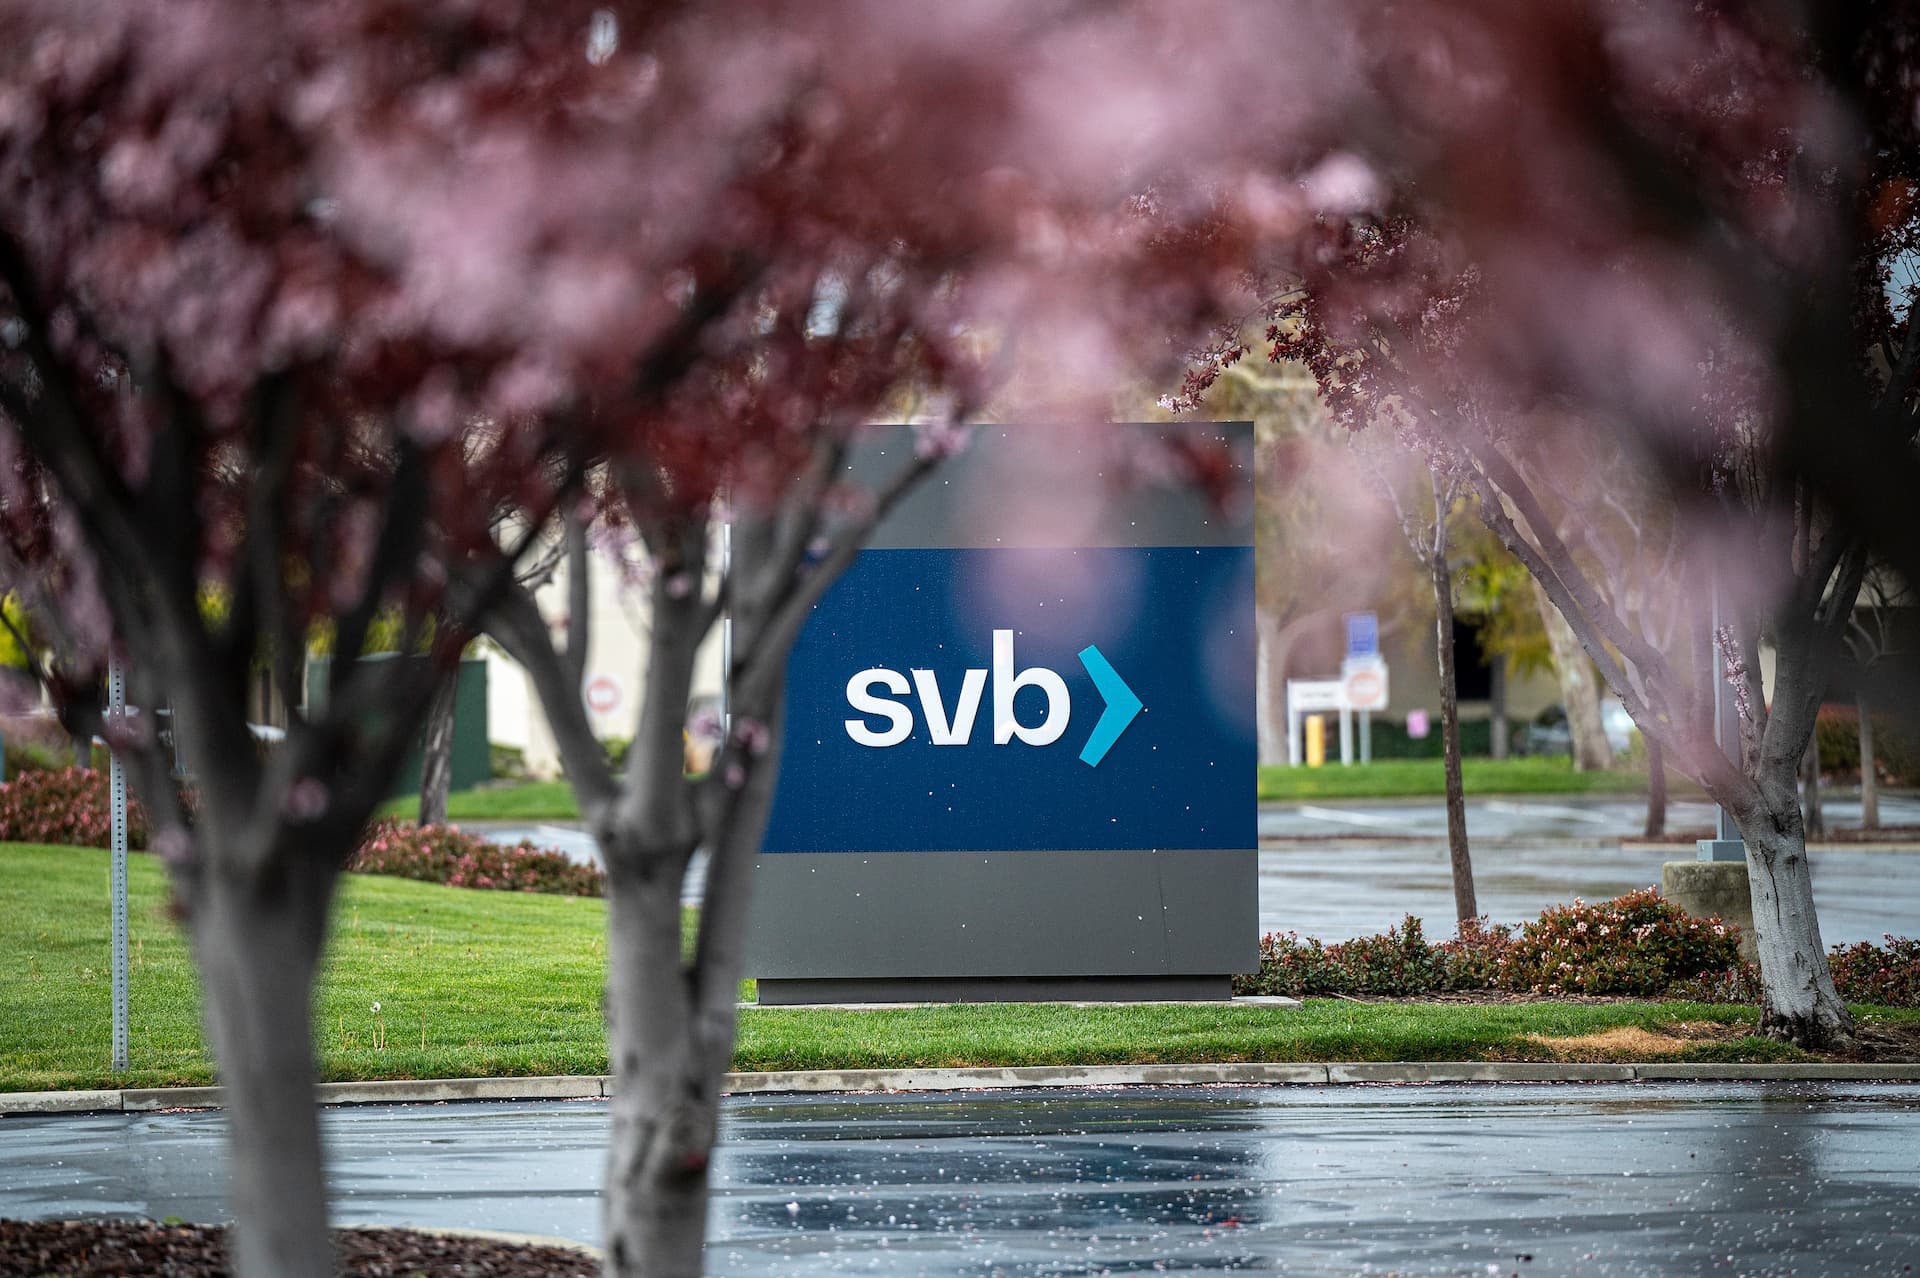 Silicon Valley Bank experiences failure